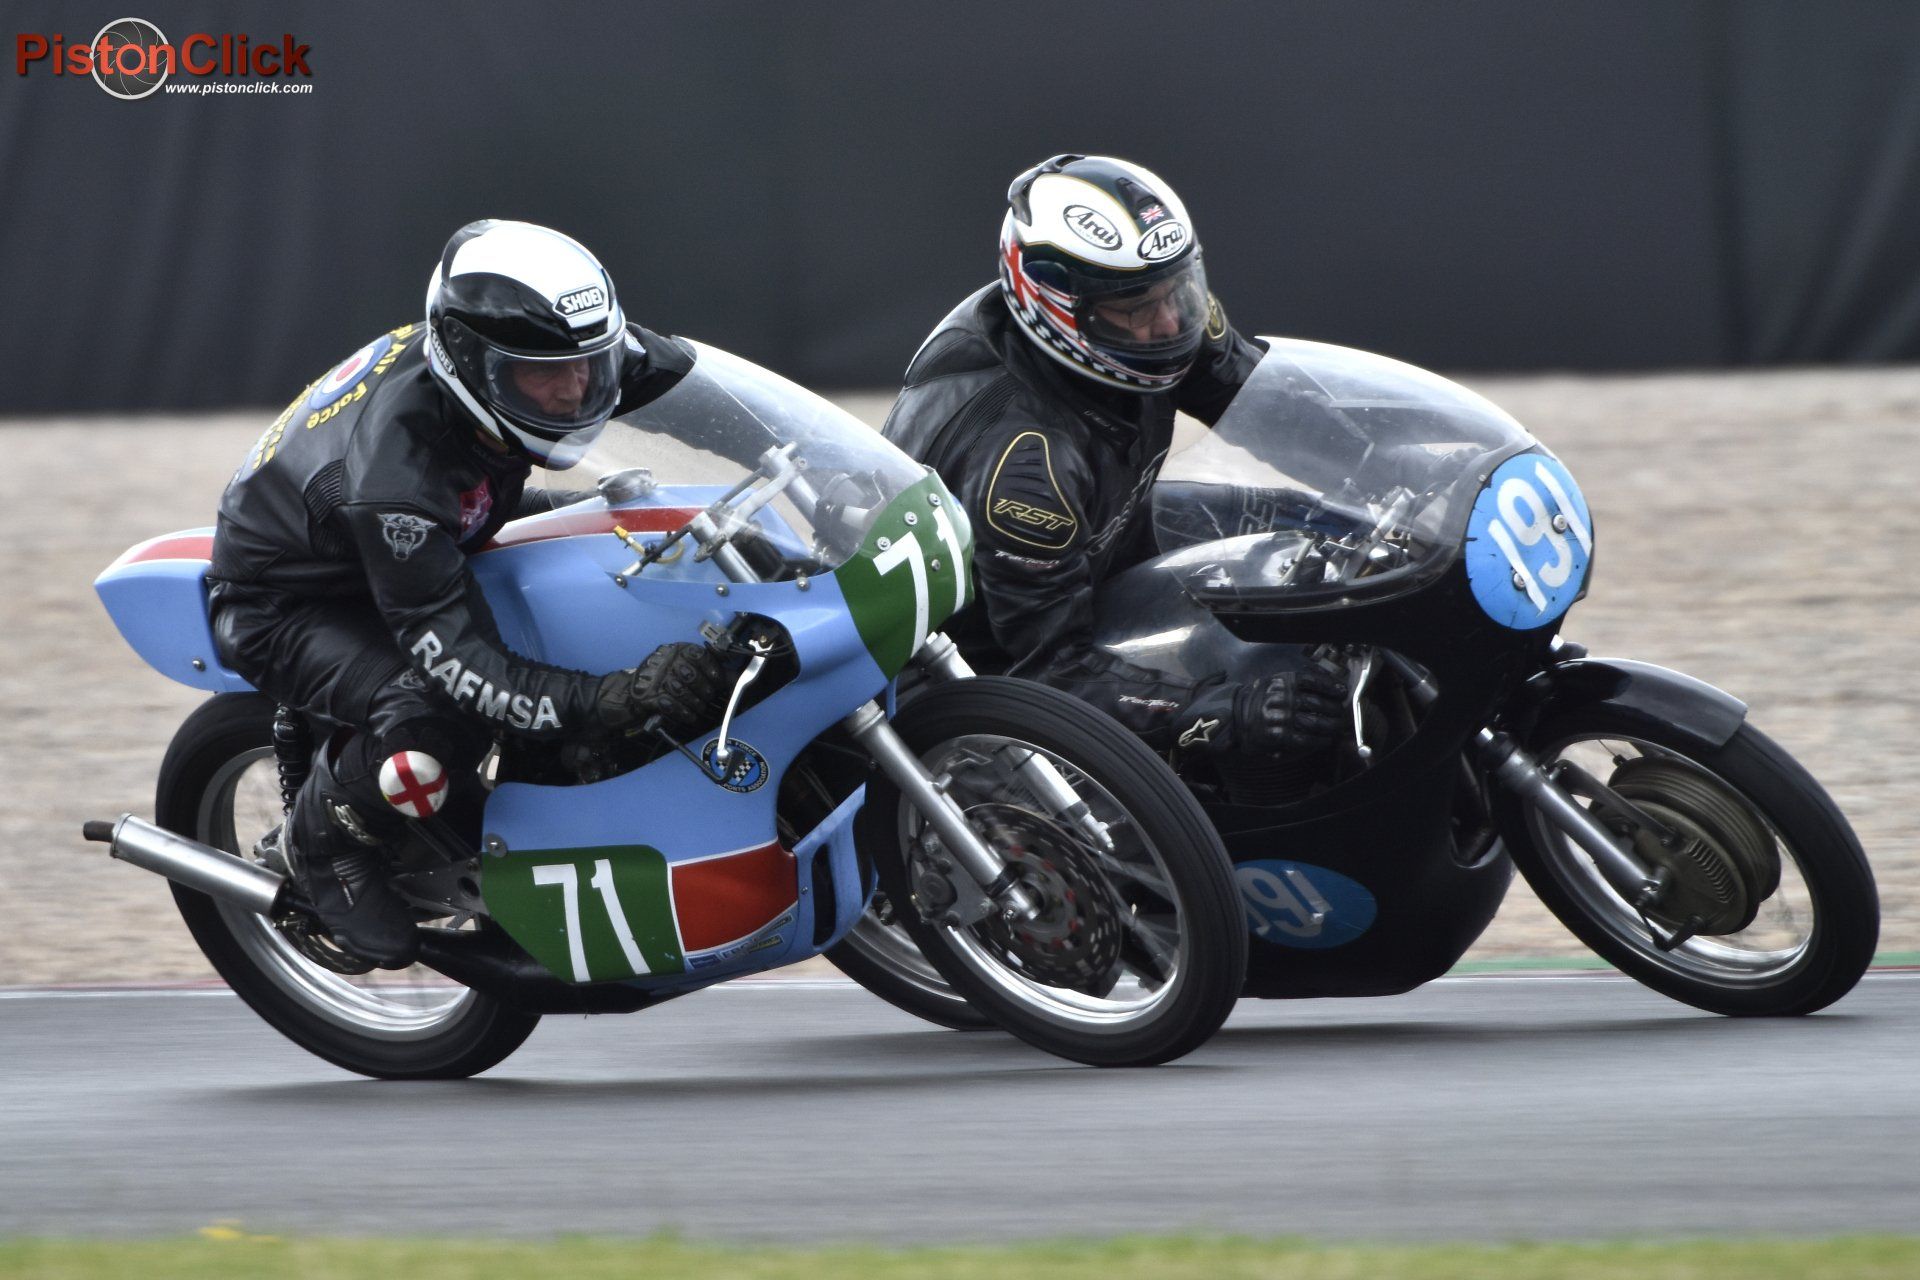 Royal Air Force Classic Motorcycle racing team at Donington Park